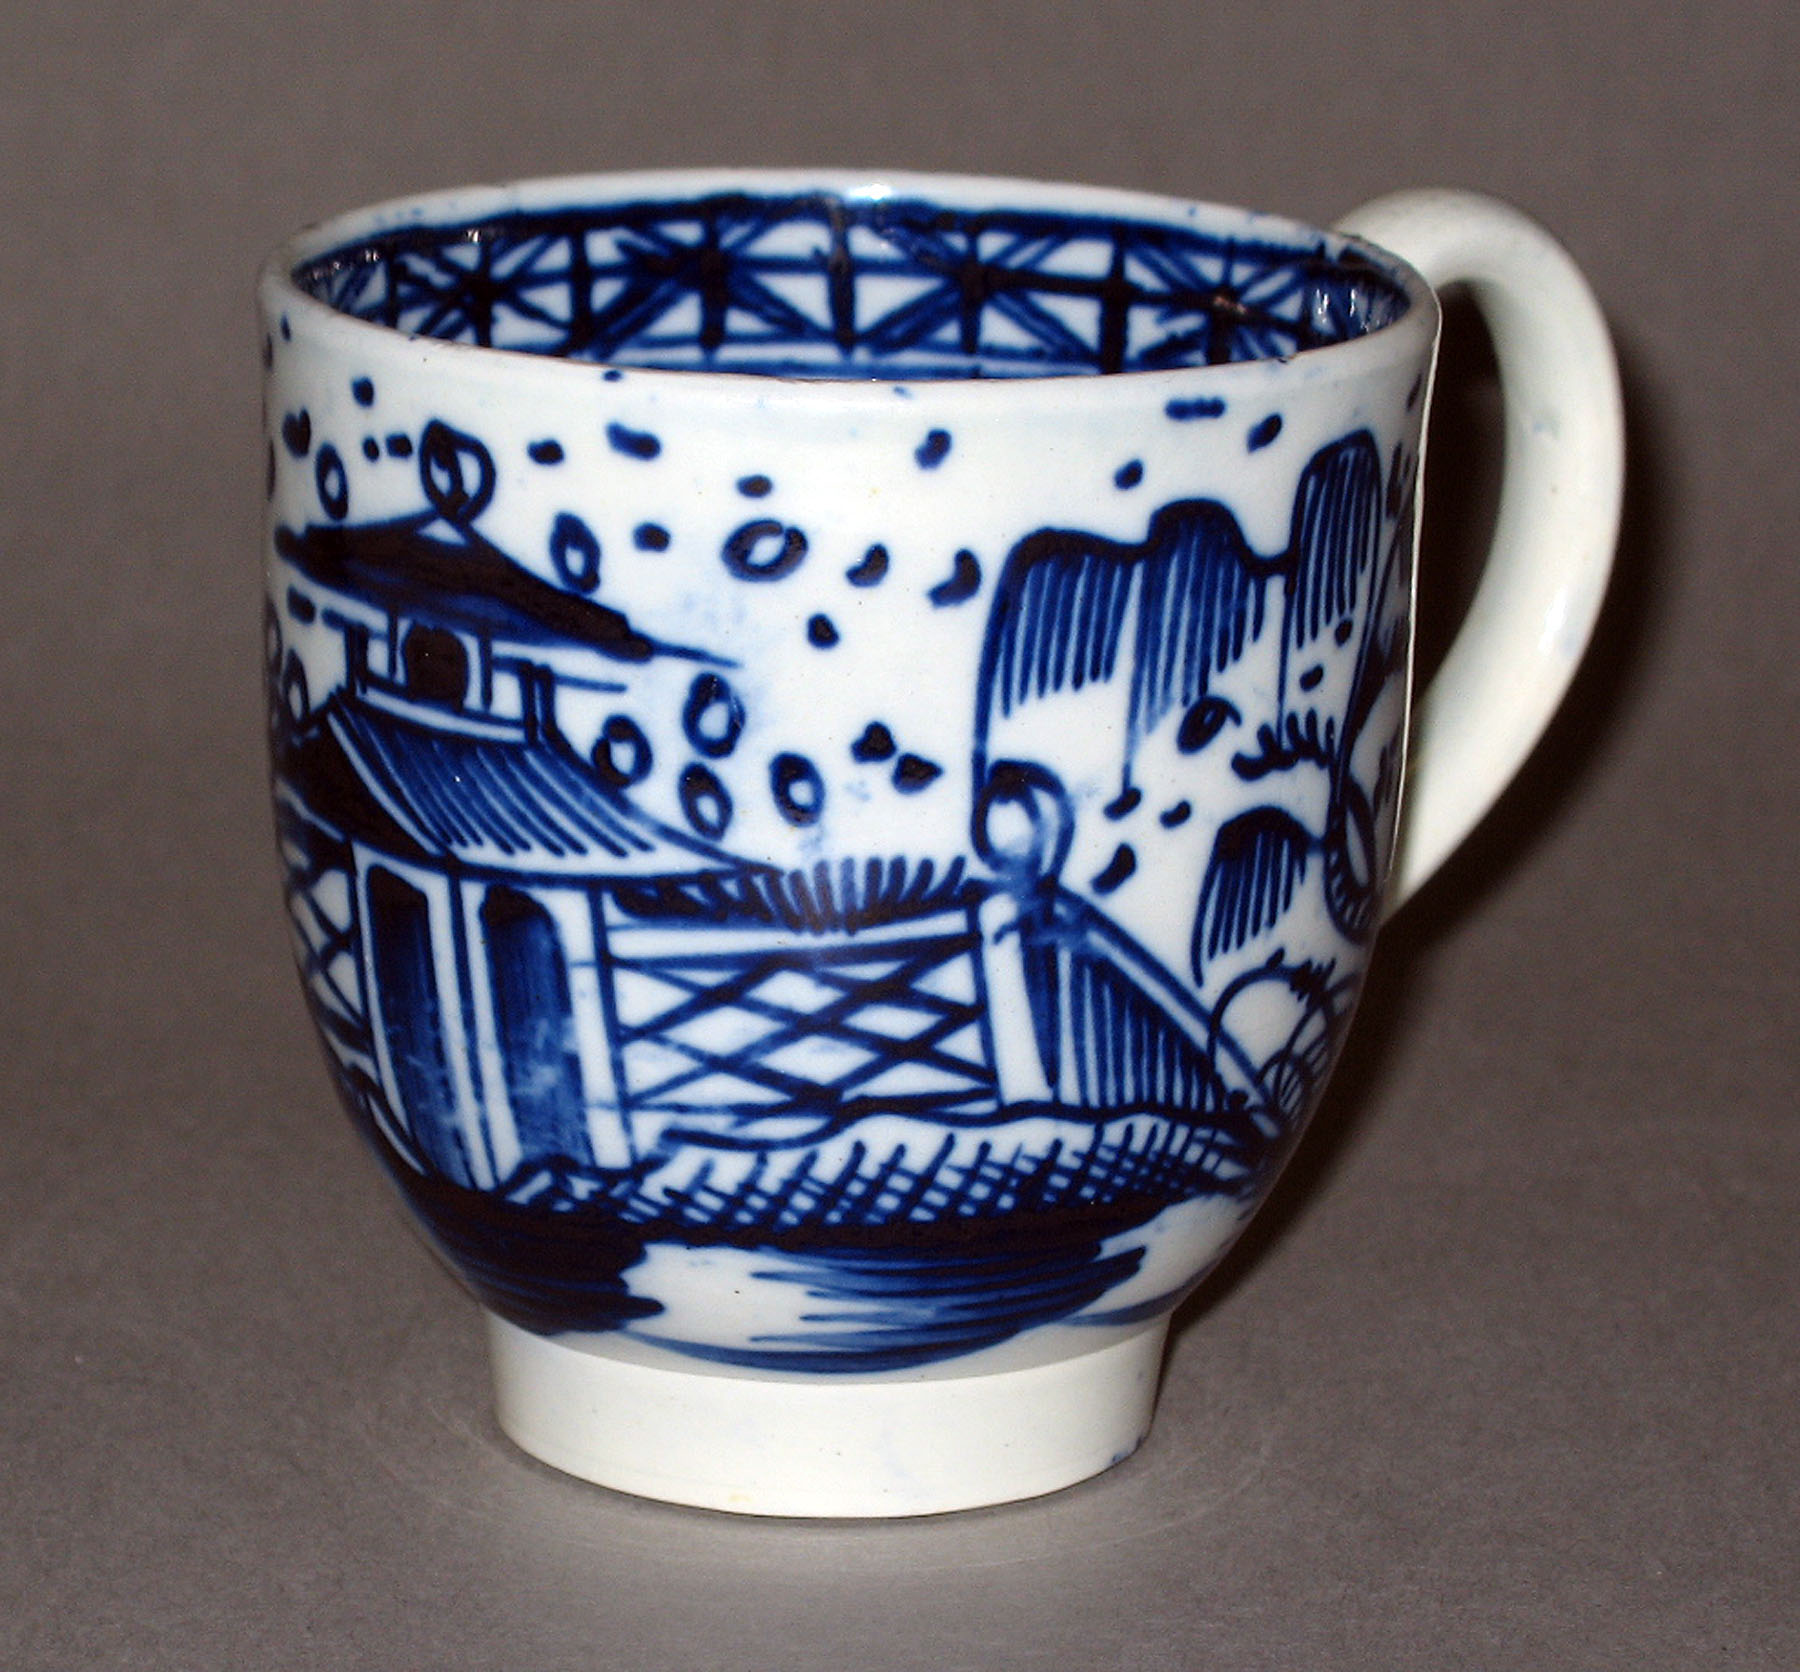 1952.0208.002 Pearlware teacup